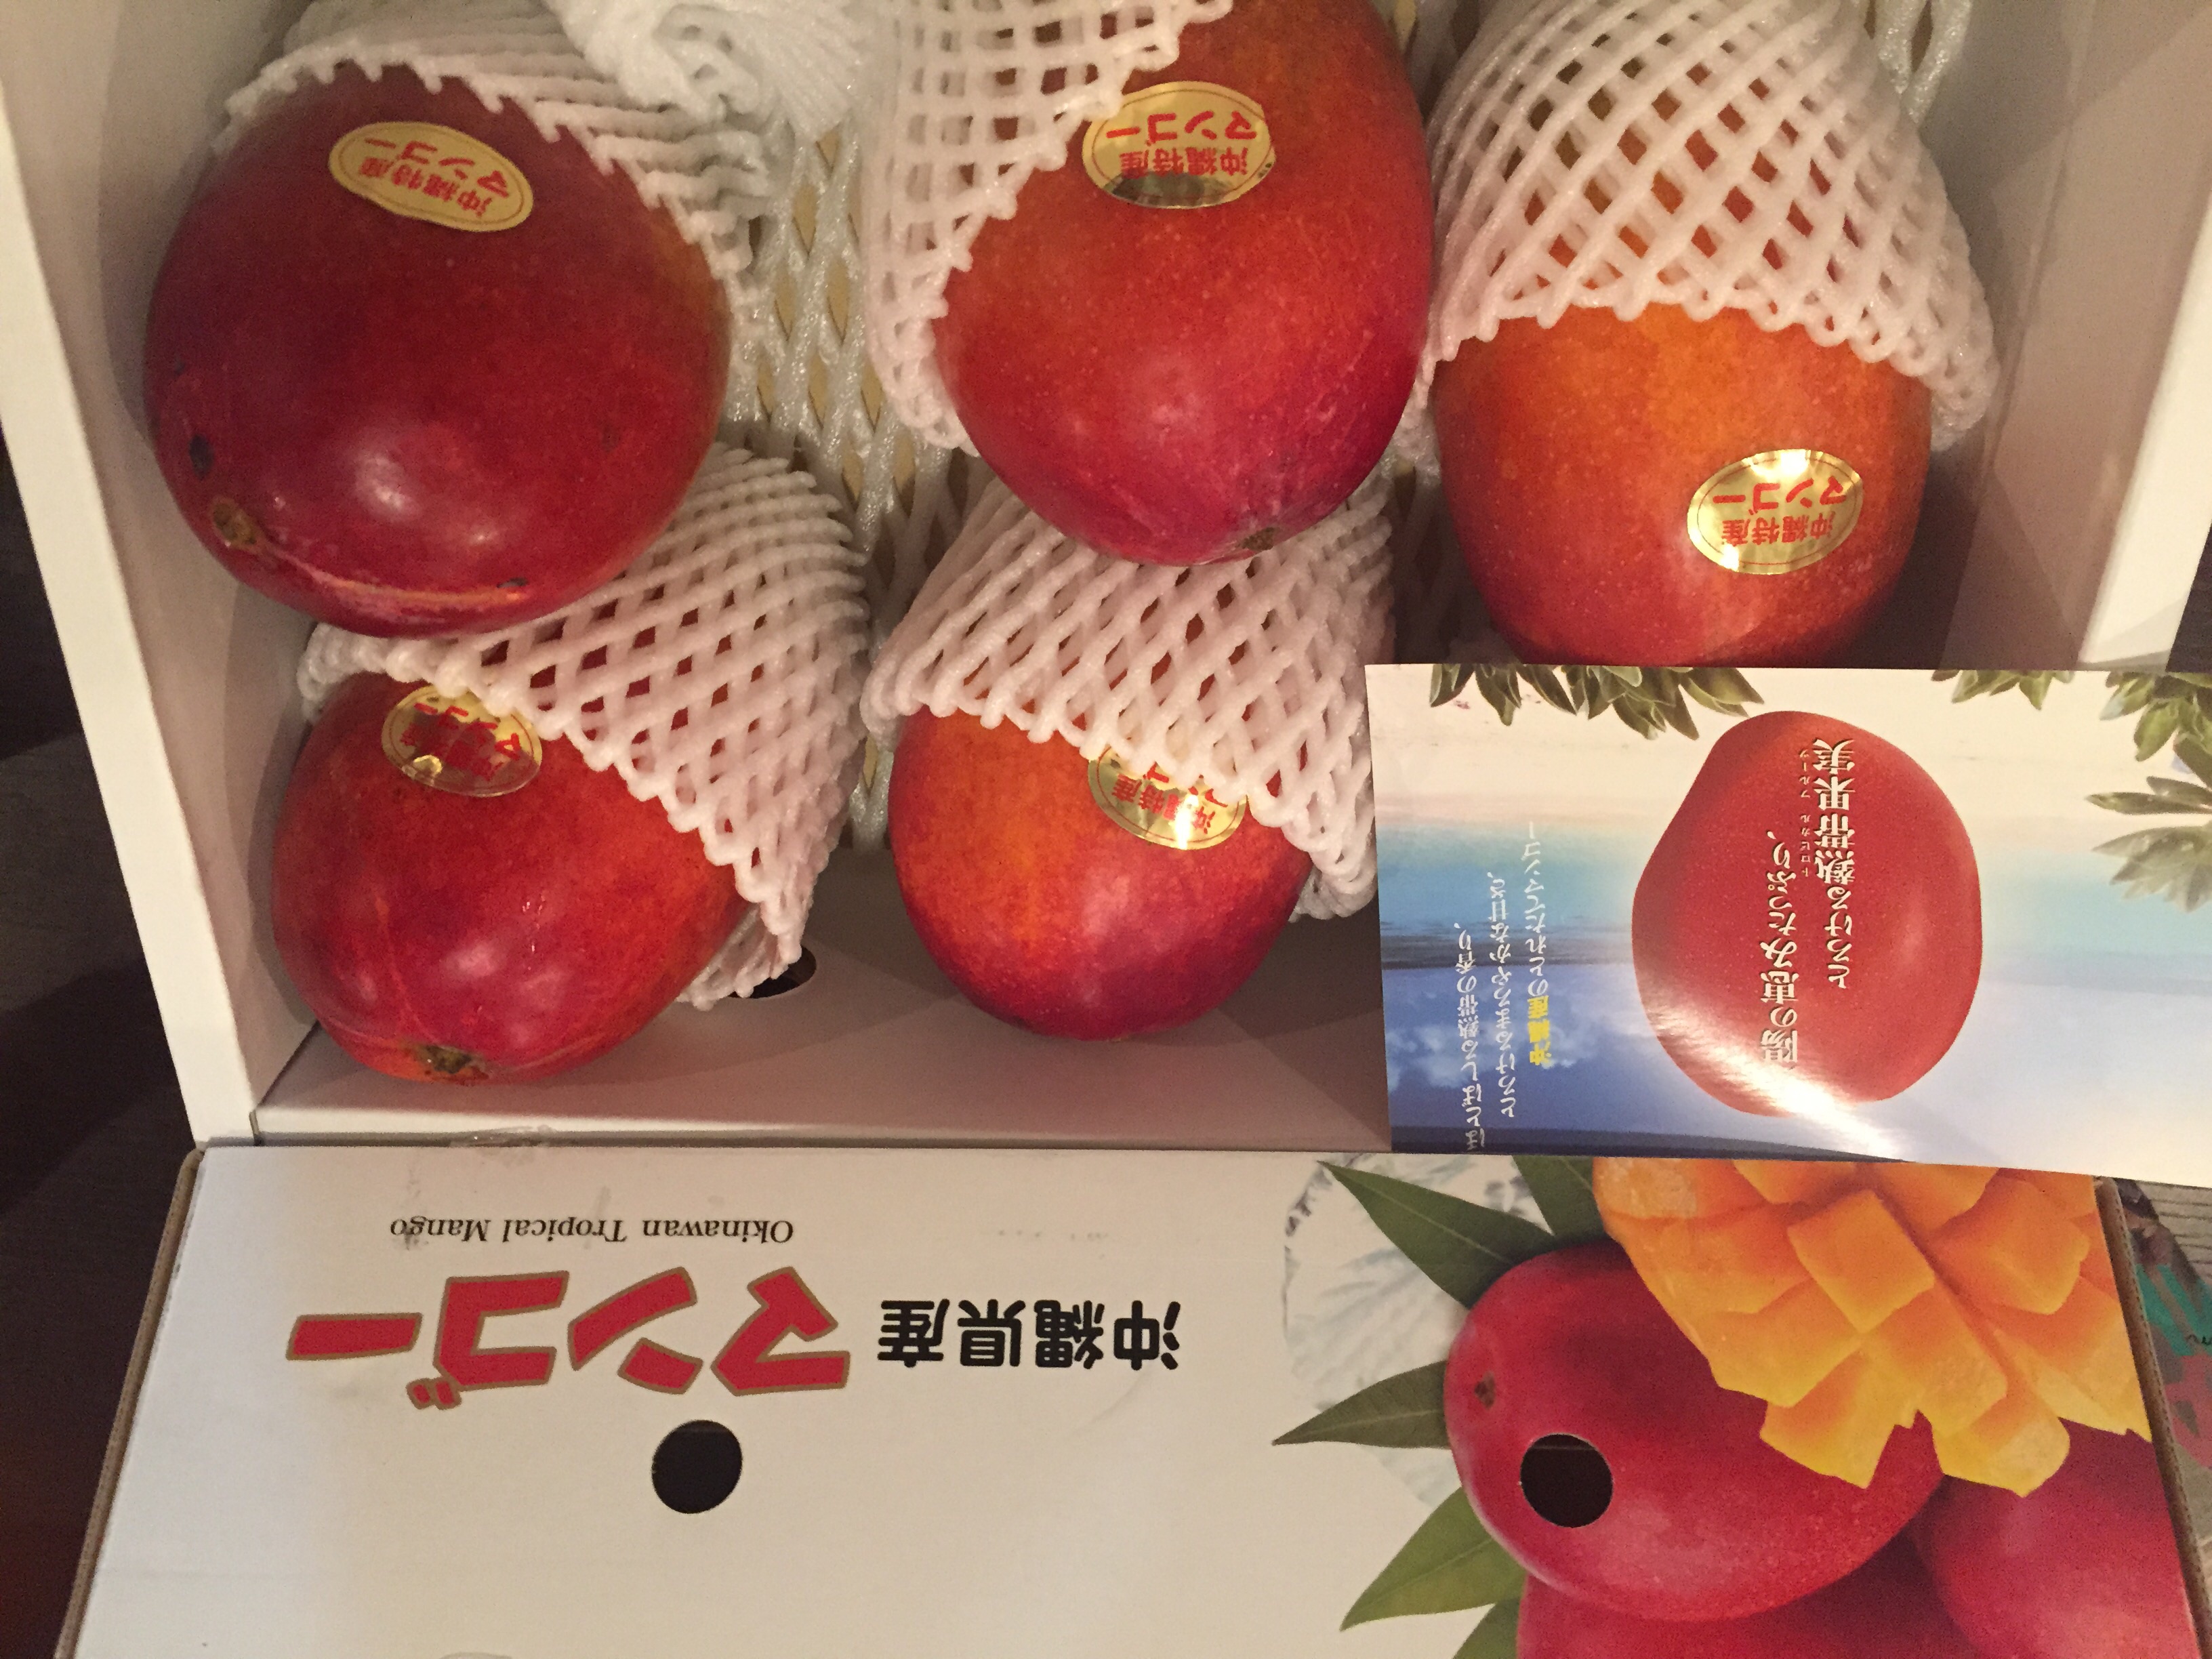 驚きの美味しさの沖縄産マンゴー